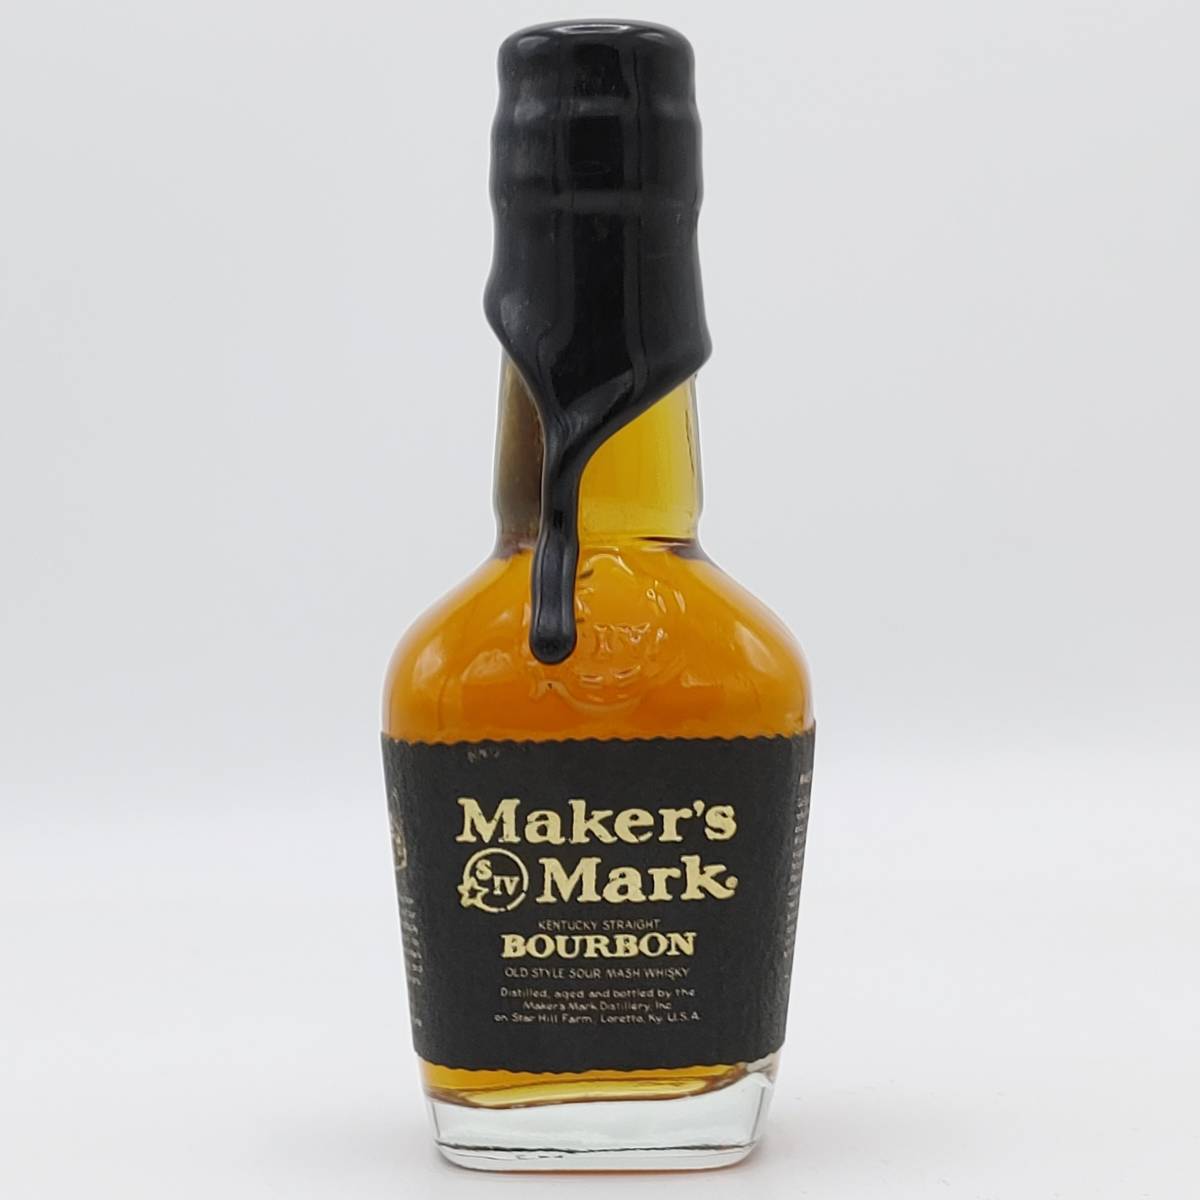 【全国送料無料】Maker's Mark Black top OLD STYLE SOUR MASH KENTUCKY STRAIGHT BOURBON WHISKY【メーカーズマーク ブラック トップ】